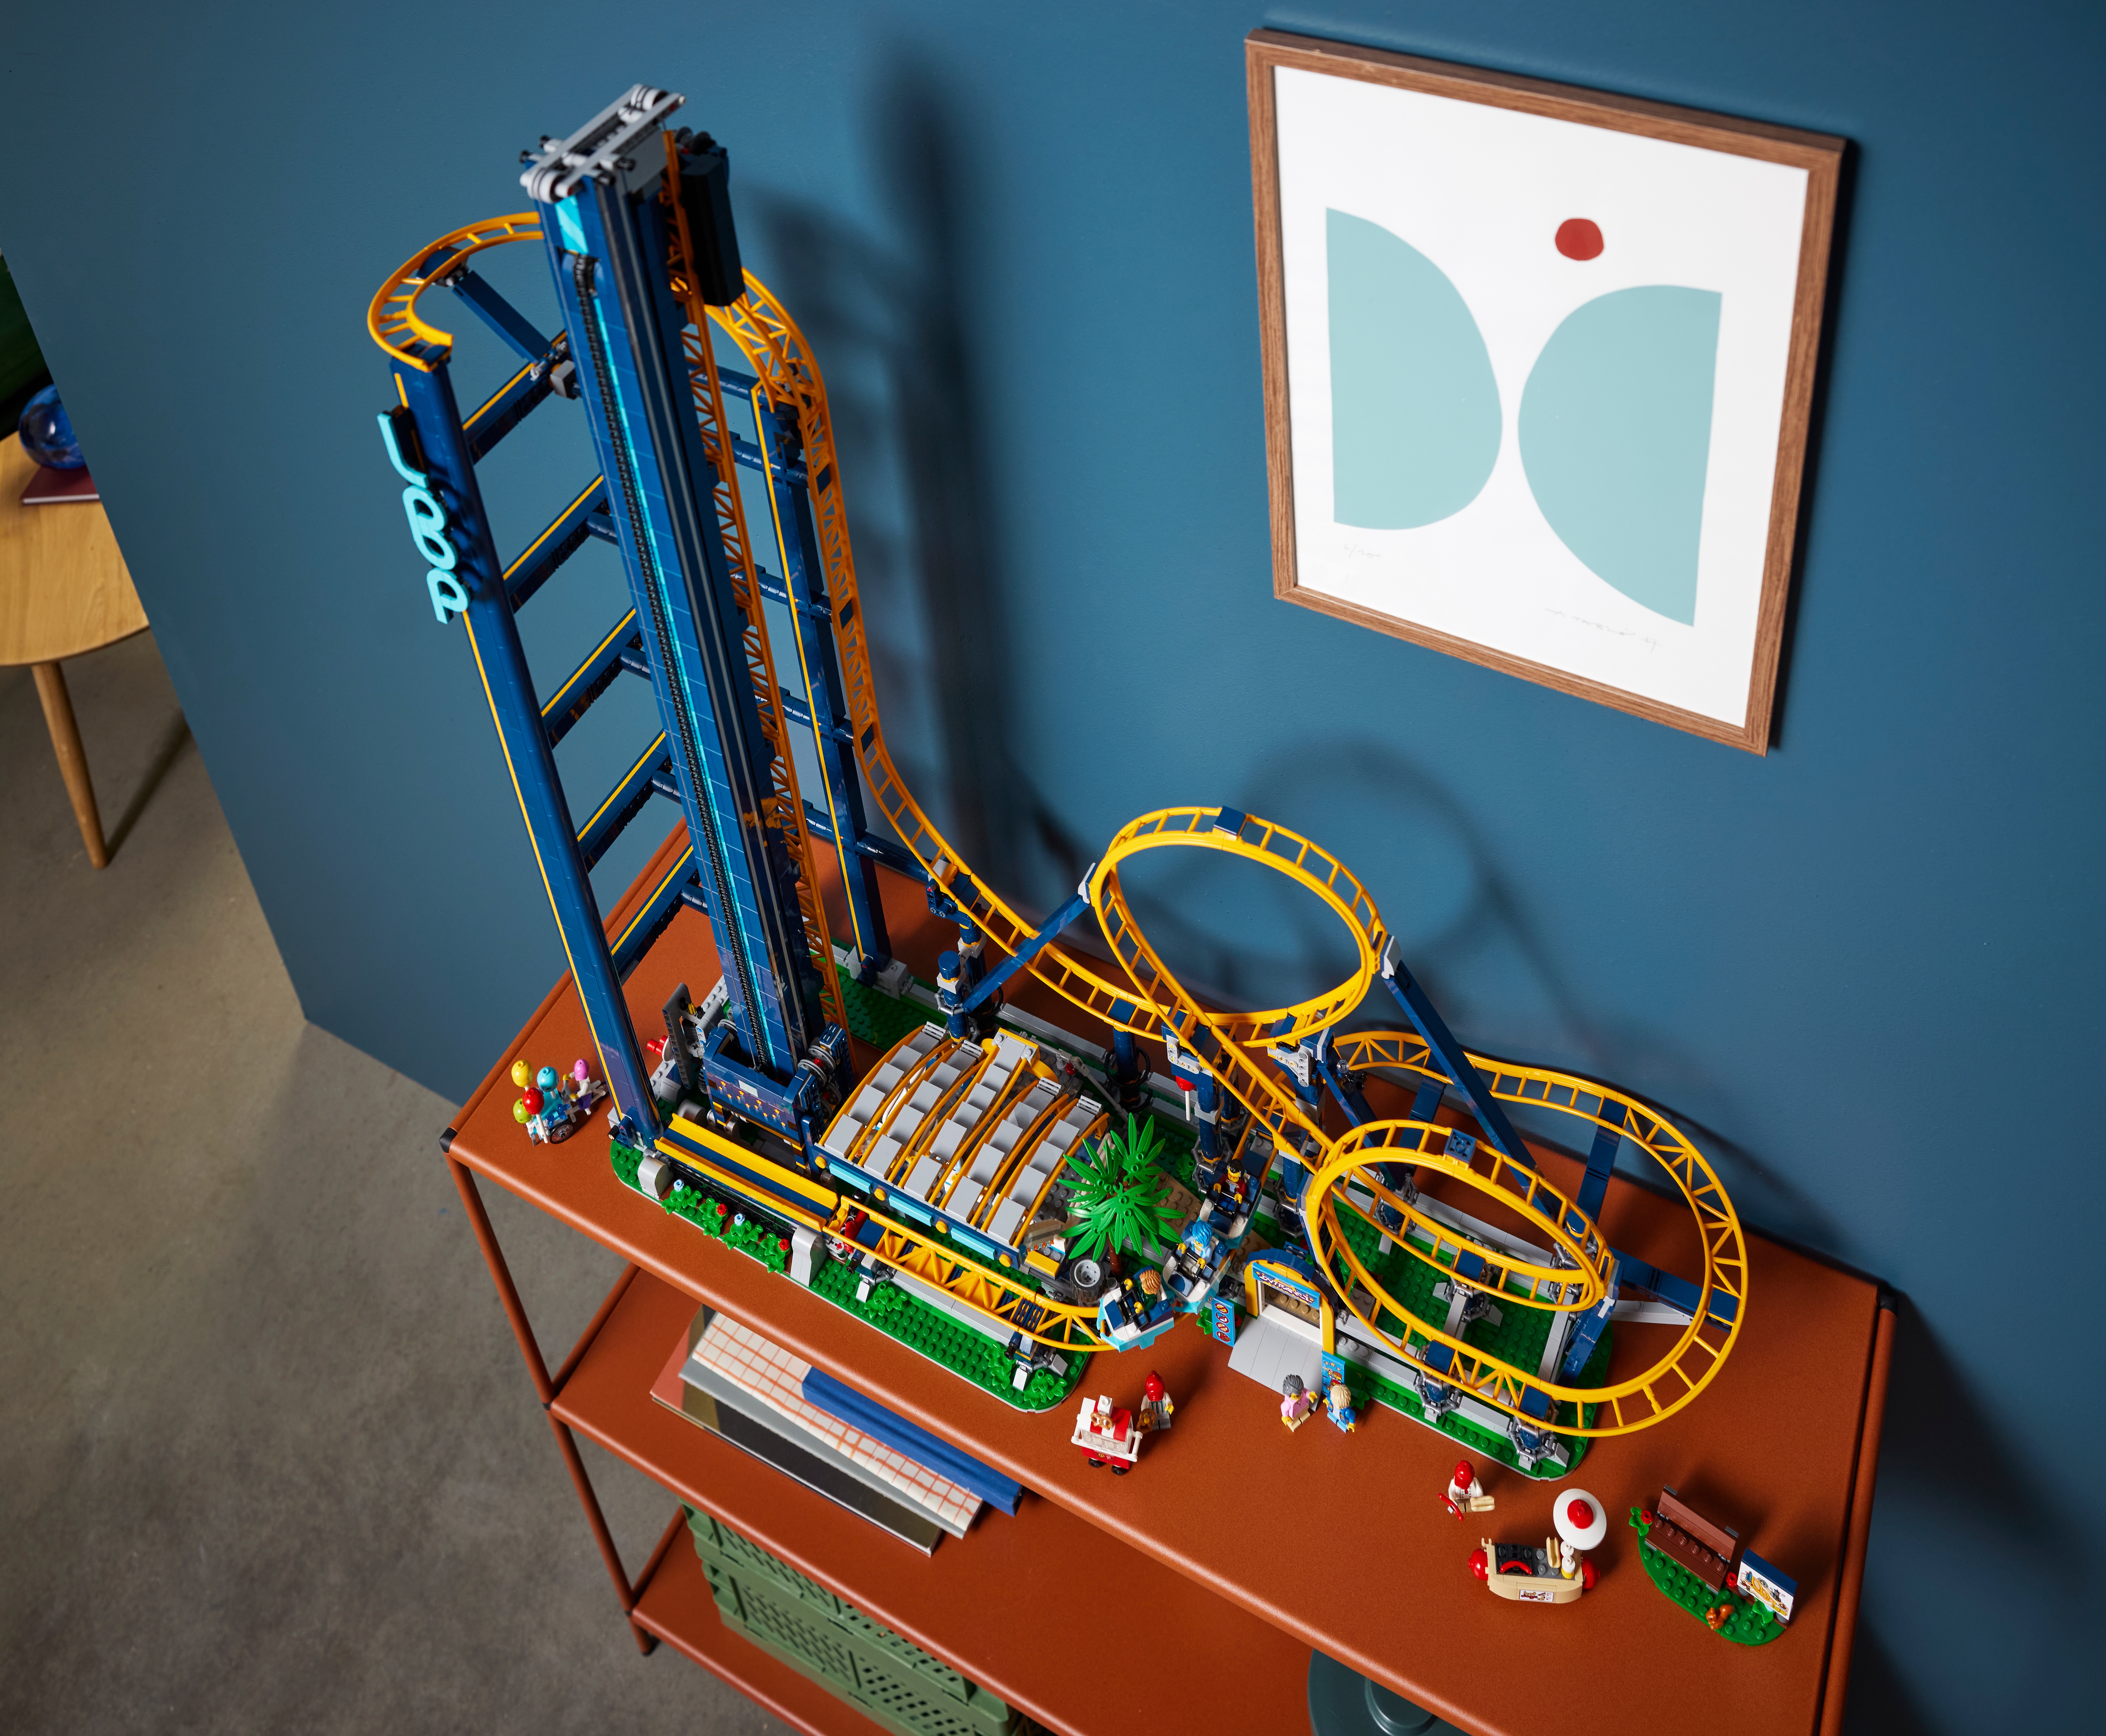 ブロック製大回転ジェットコースターの物理学的なナゾを解明！ |レゴ 